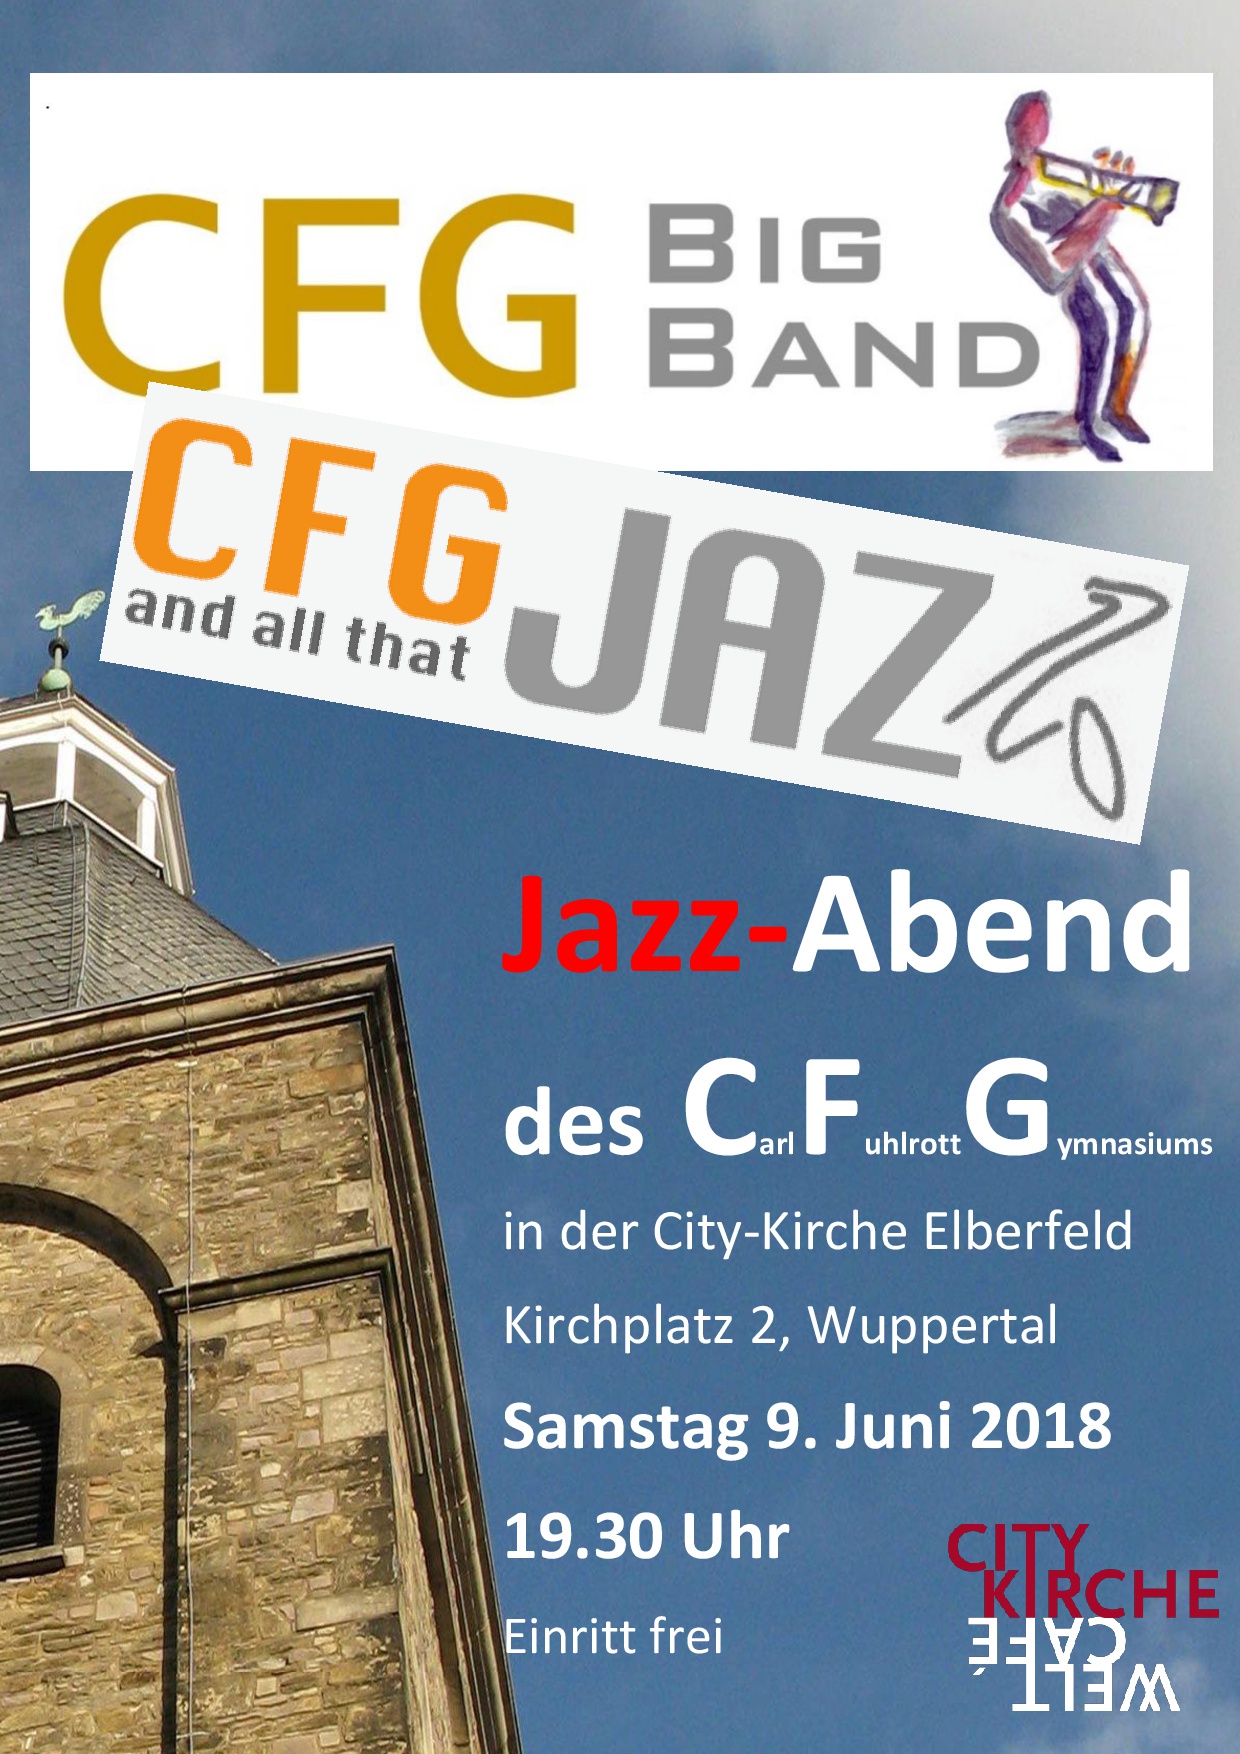 2018 Plakat cfg bigband citykirche -001